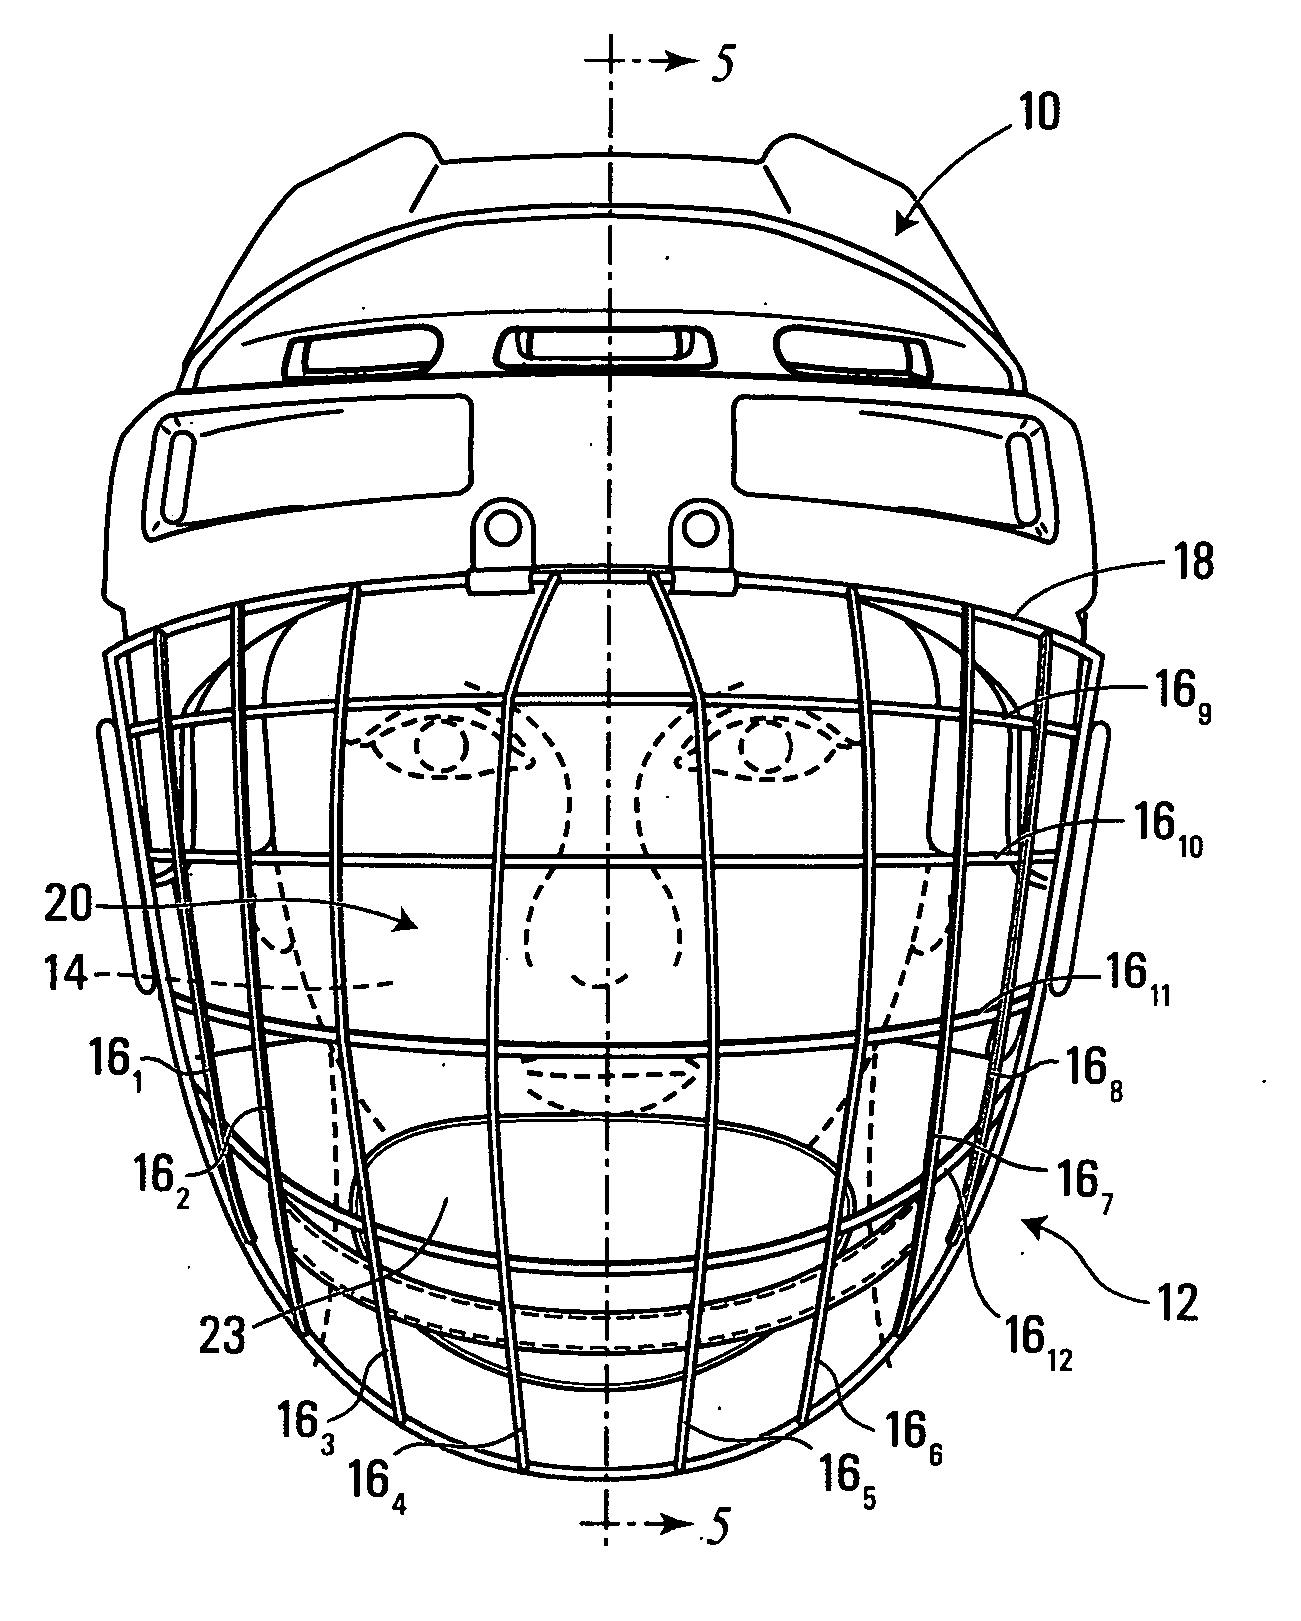 Face guard for a hockey helmet